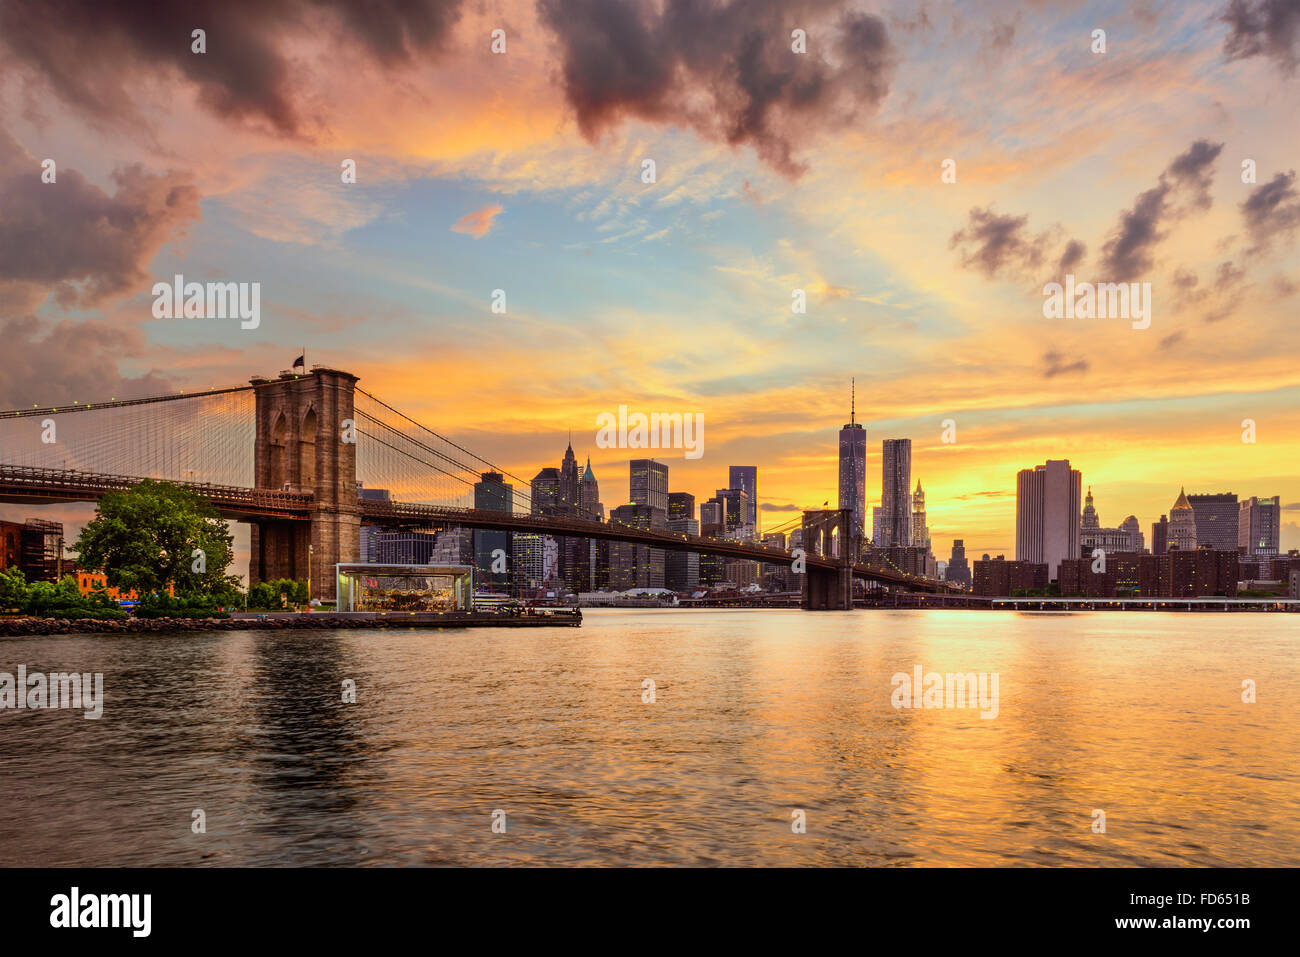 La ville de New York, USA skyline de l'East River et pont de Brooklyn. Banque D'Images